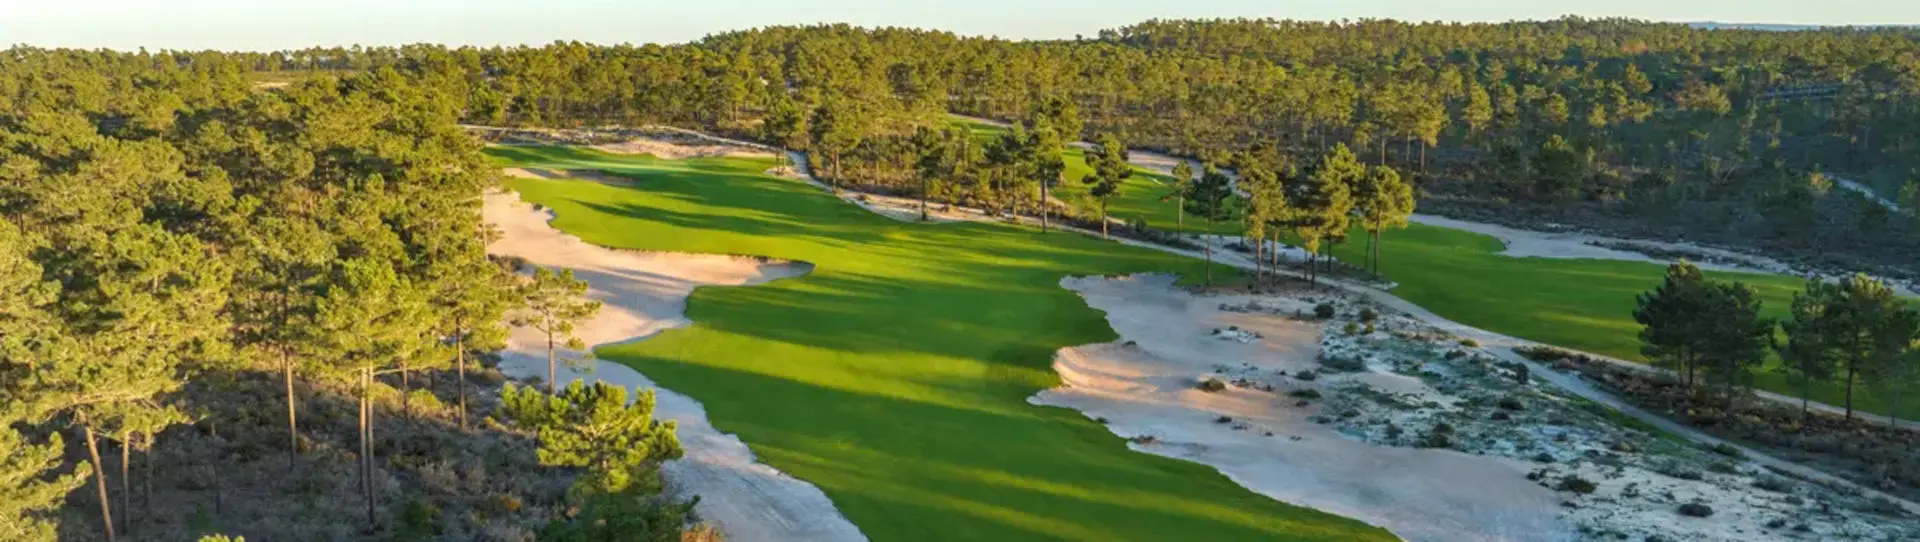 Portugal golf courses - Dunas Terras da Comporta - Photo 1